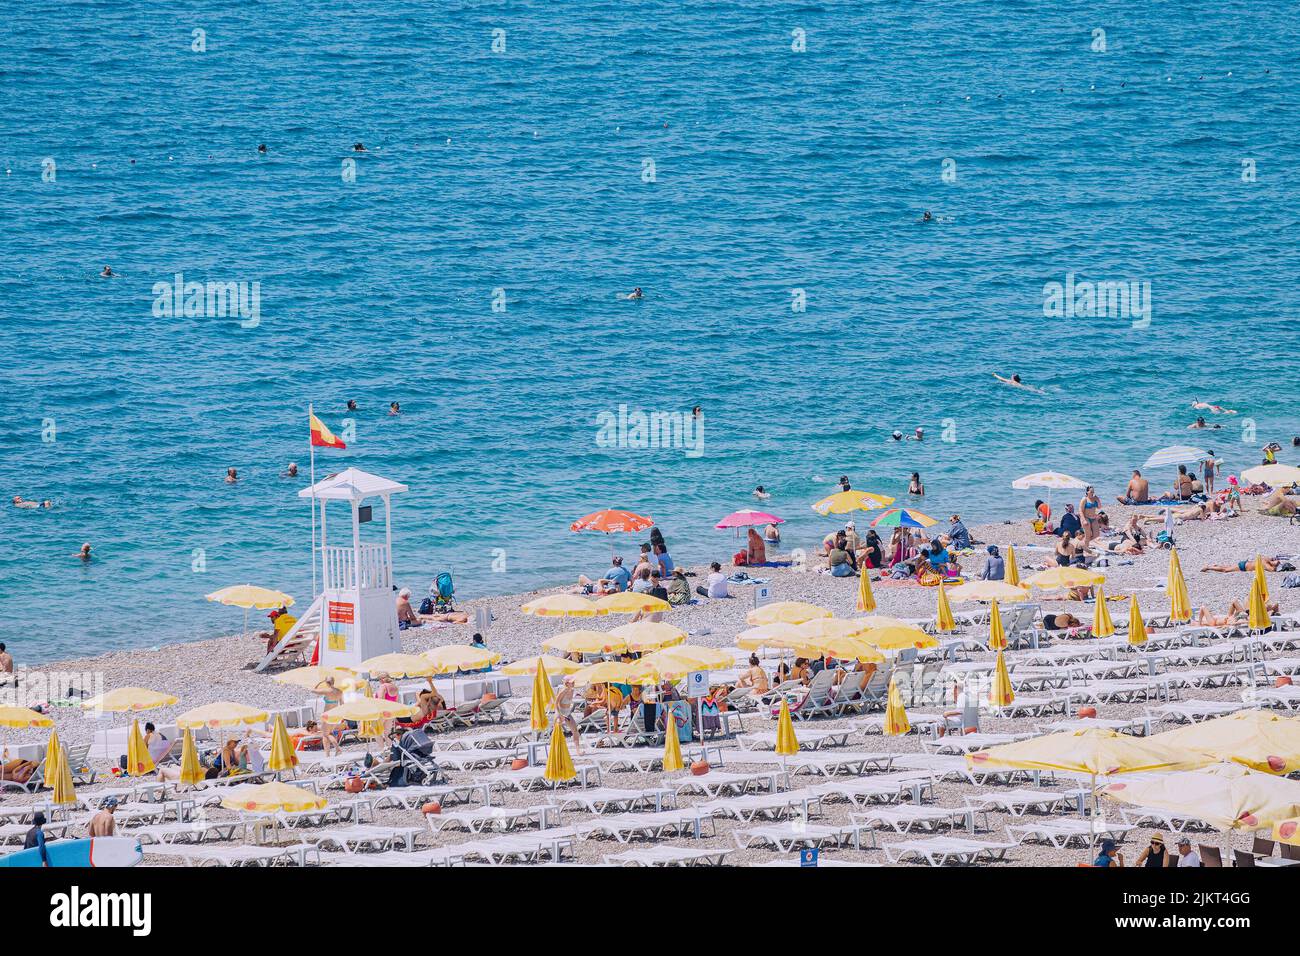 04 de junio de 2022, Antalya, Turquía: Playa de ciudad llena de gente con cientos de turistas y turistas descansando, tomando el sol y nadando en el verano extremadamente caliente d Foto de stock